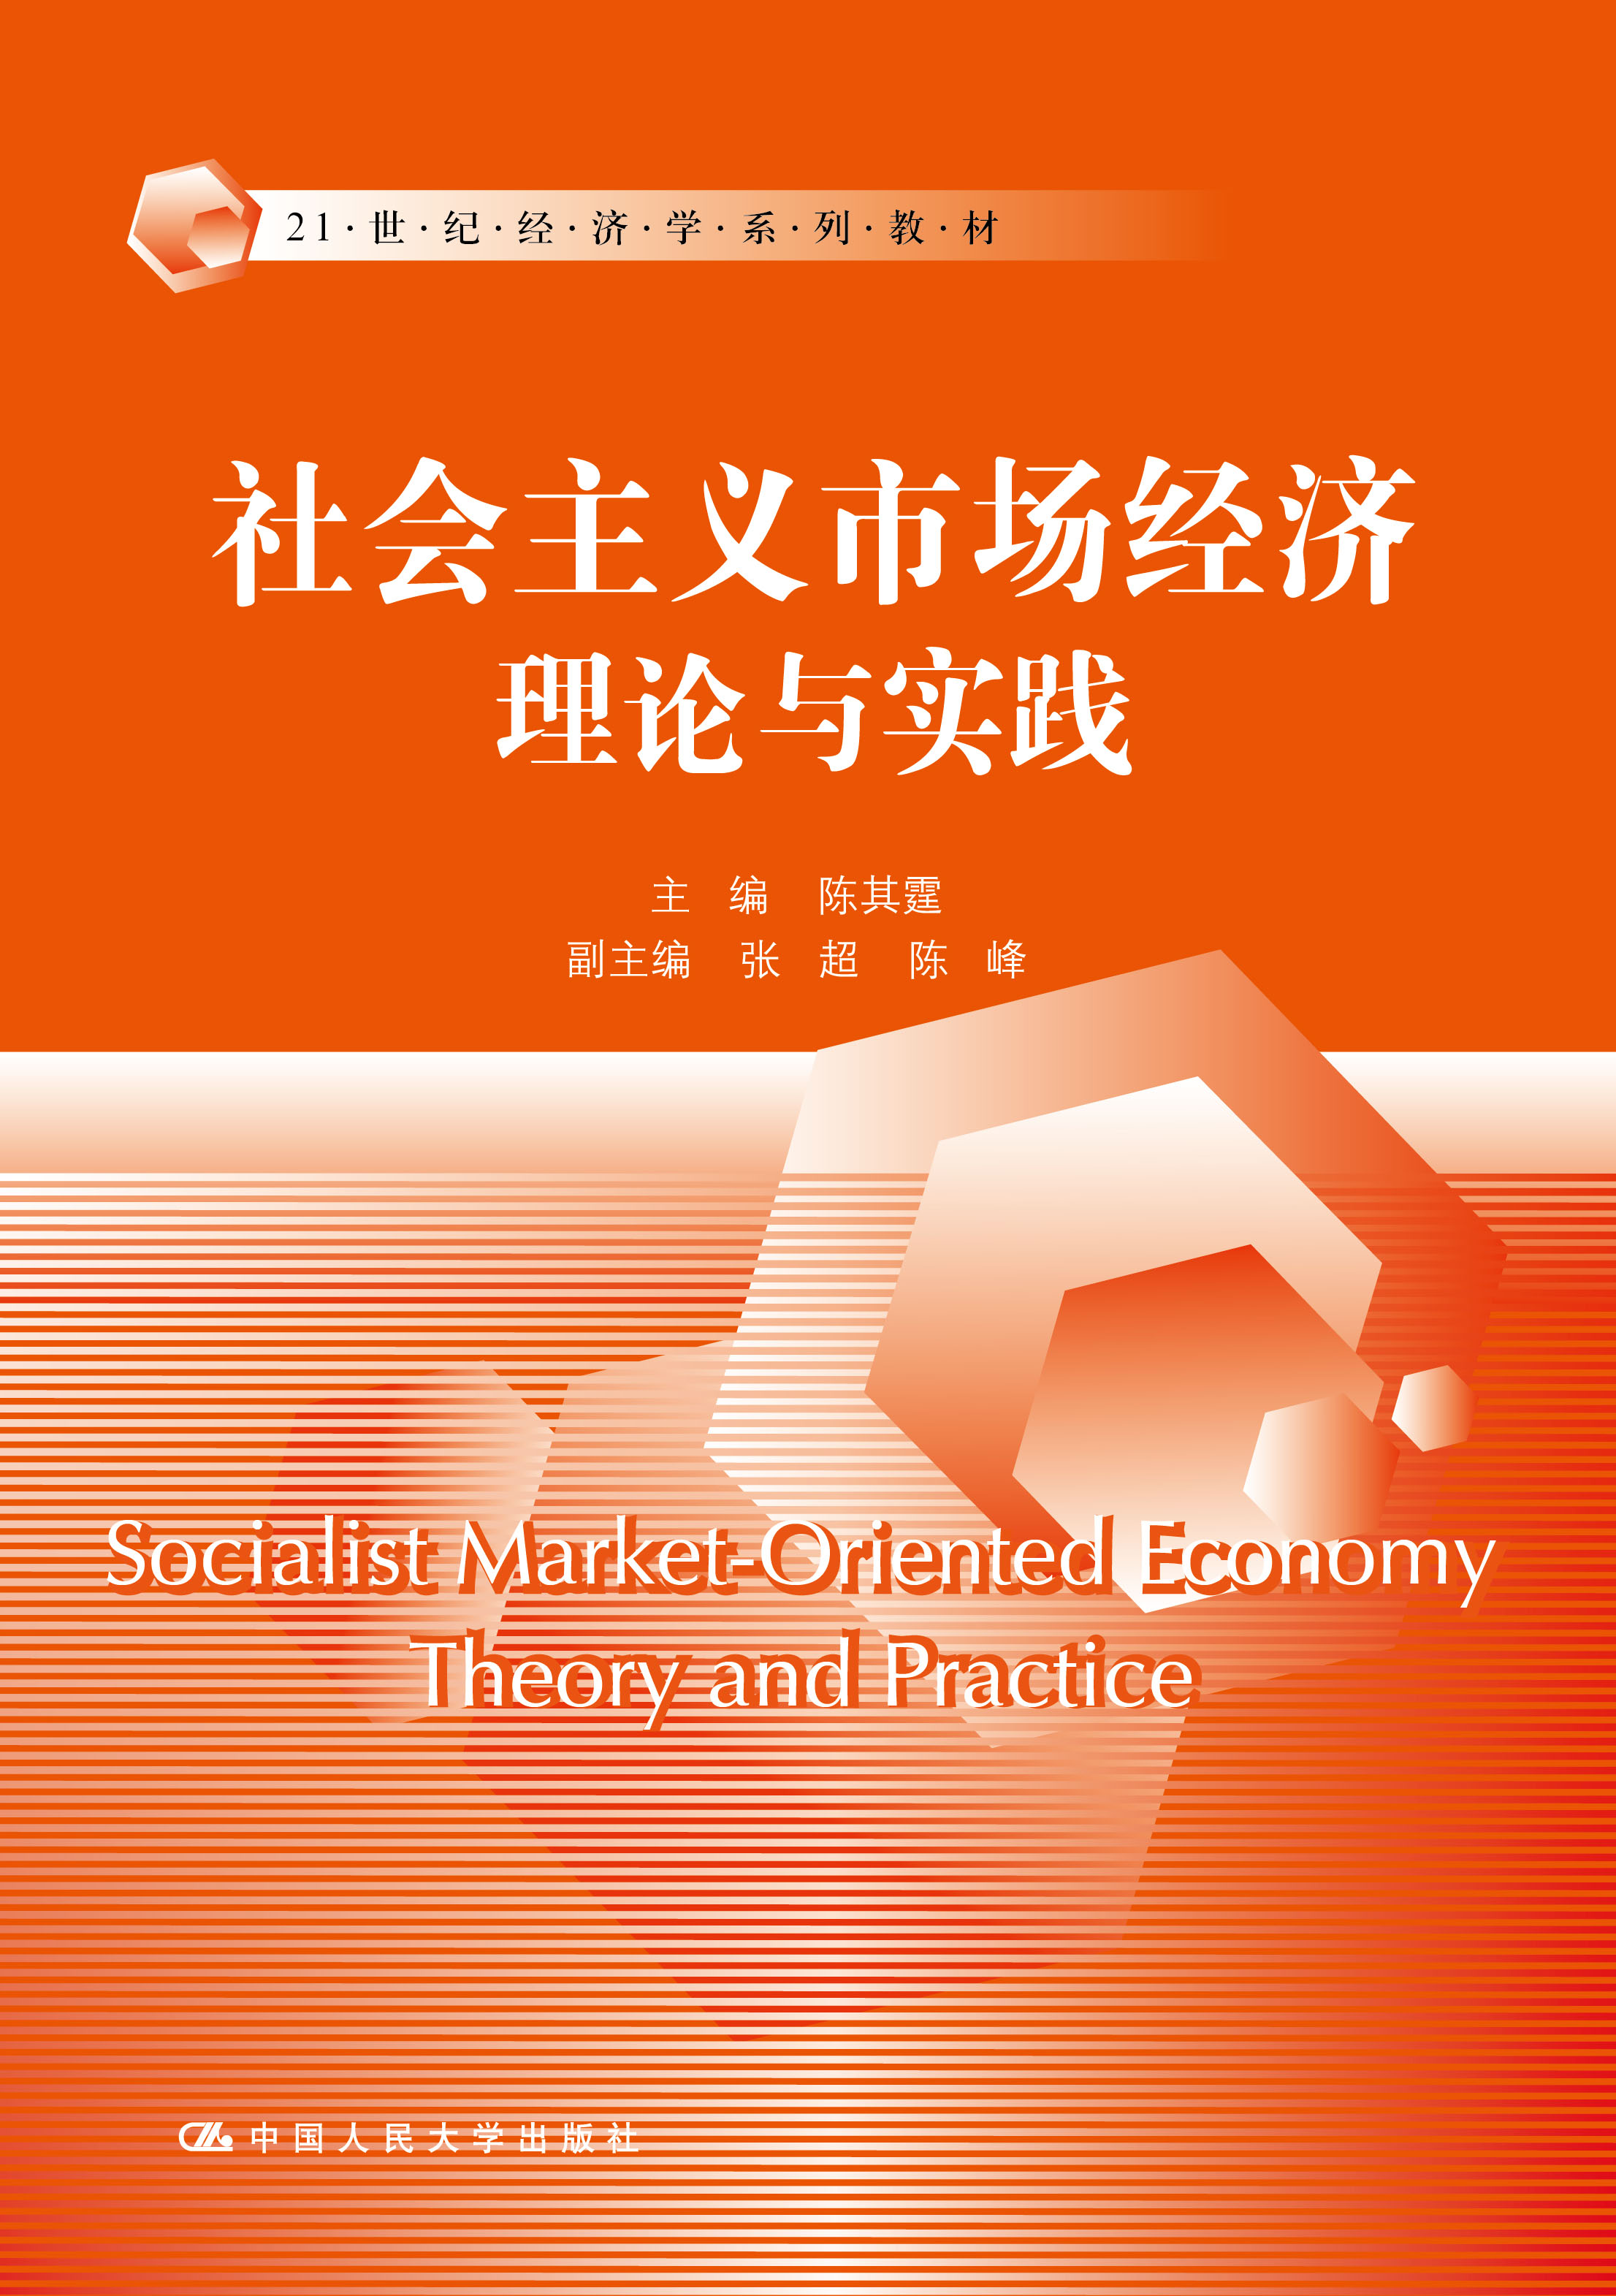 社會主義市場經濟理論與實踐(中國人民大學出版社出版書籍)